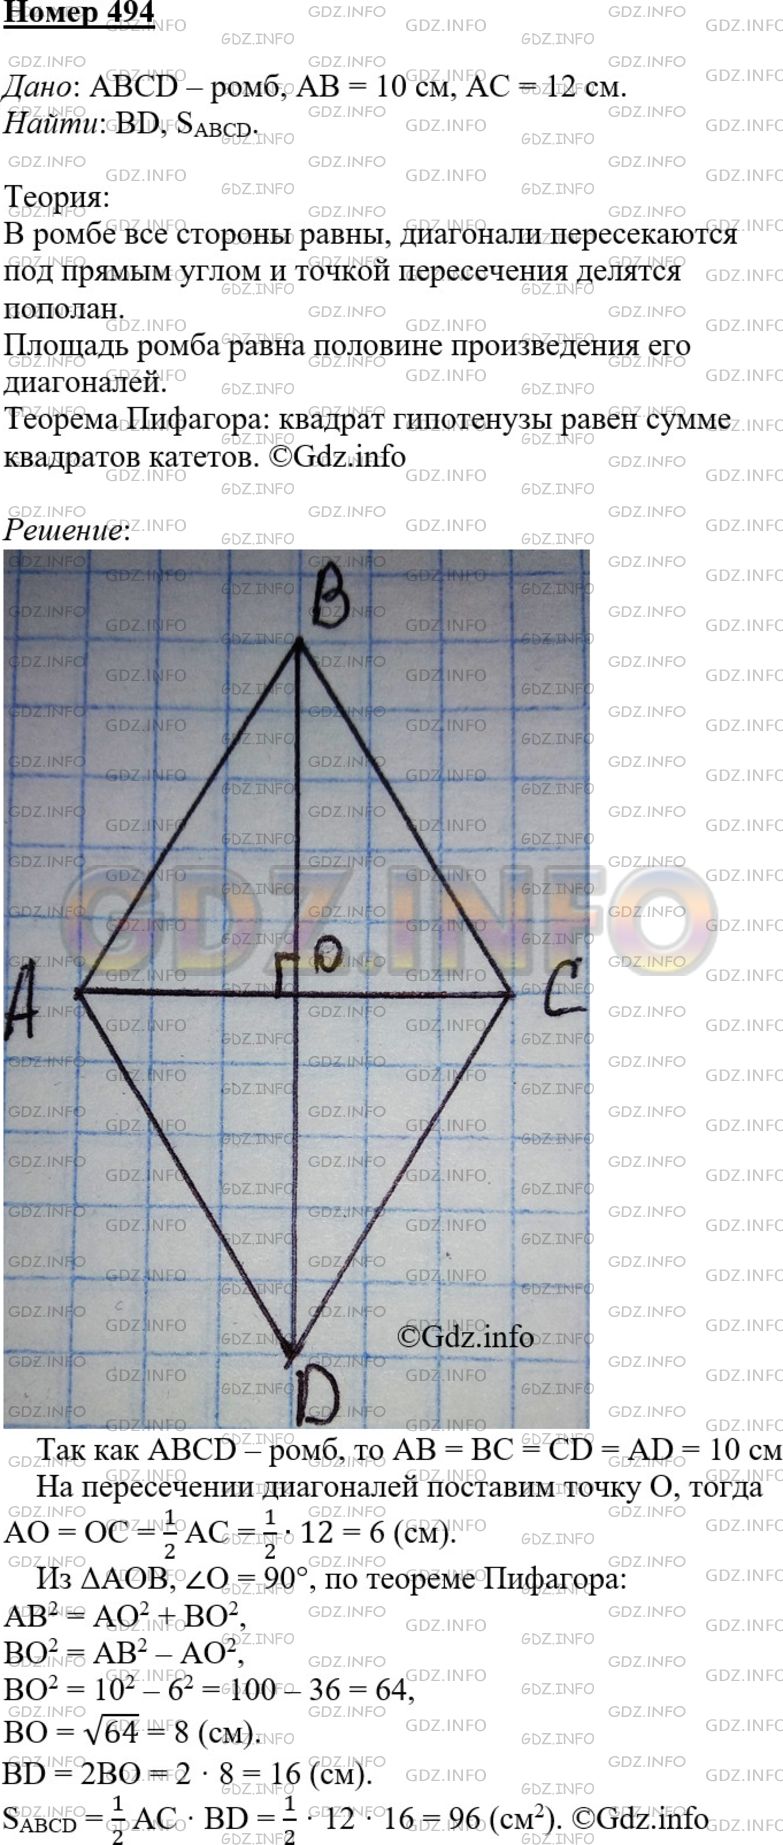 494 Геометрия. Площадь ромба равна произведению его диагоналей. 494 Геометрия 8. Найдите площадь и периметр ромба если его диагонали равны 8 см и 10 см.